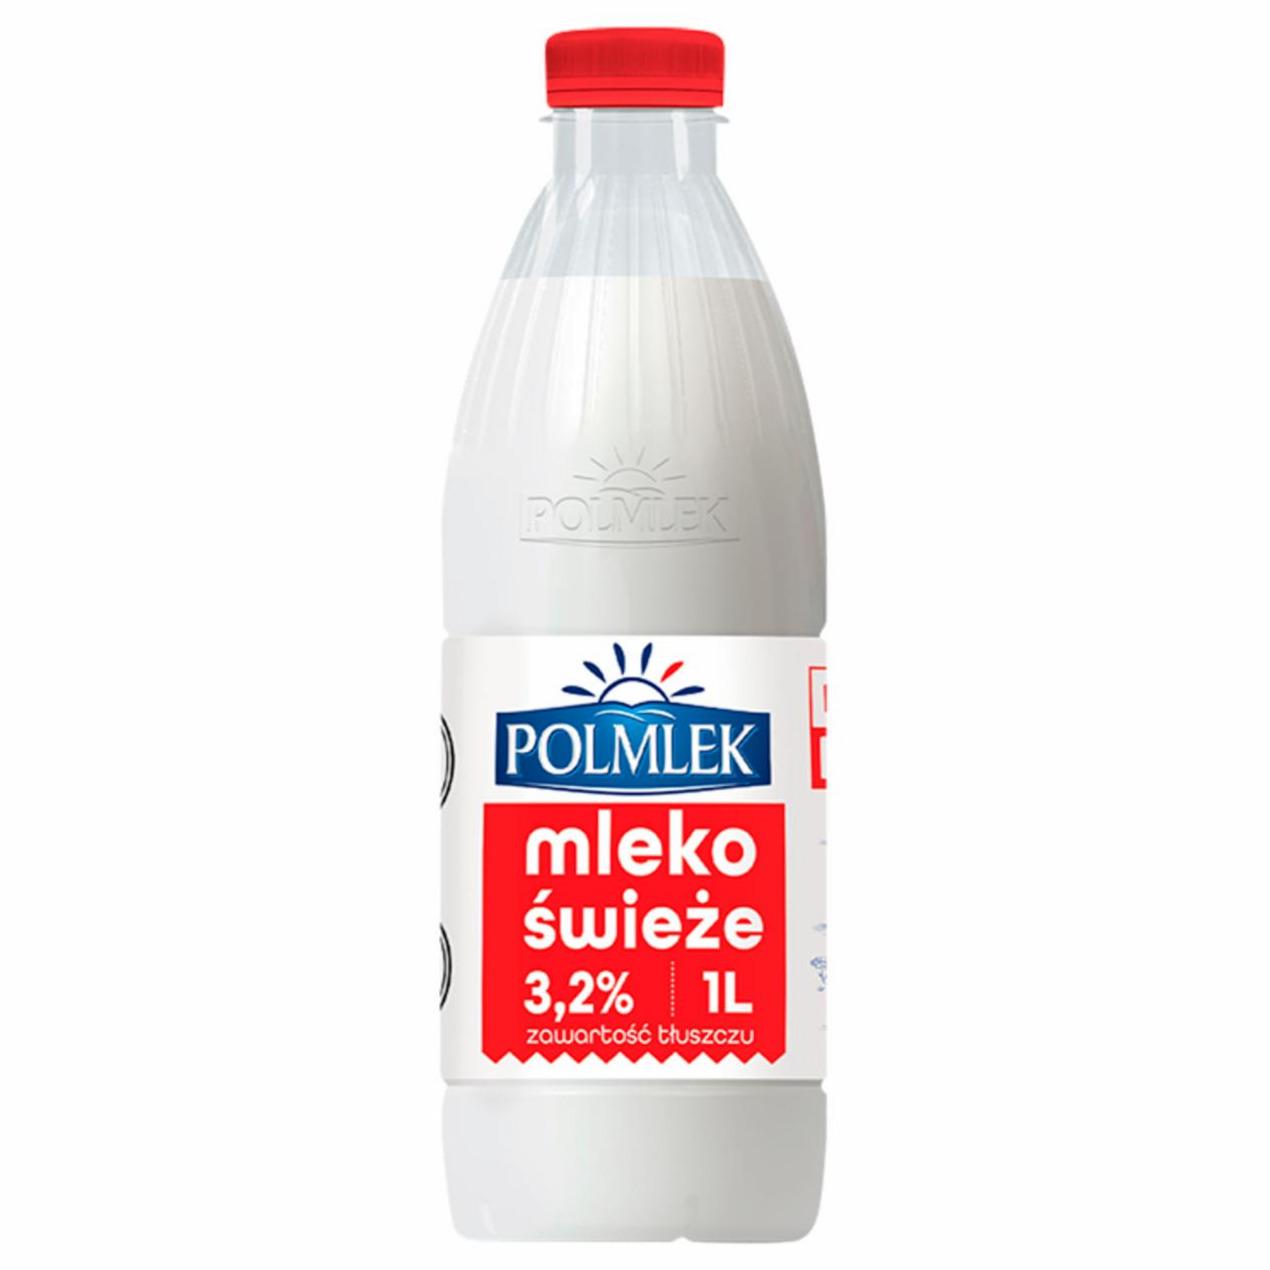 Zdjęcia - Polmlek Mleko świeże 3,2% 1 l